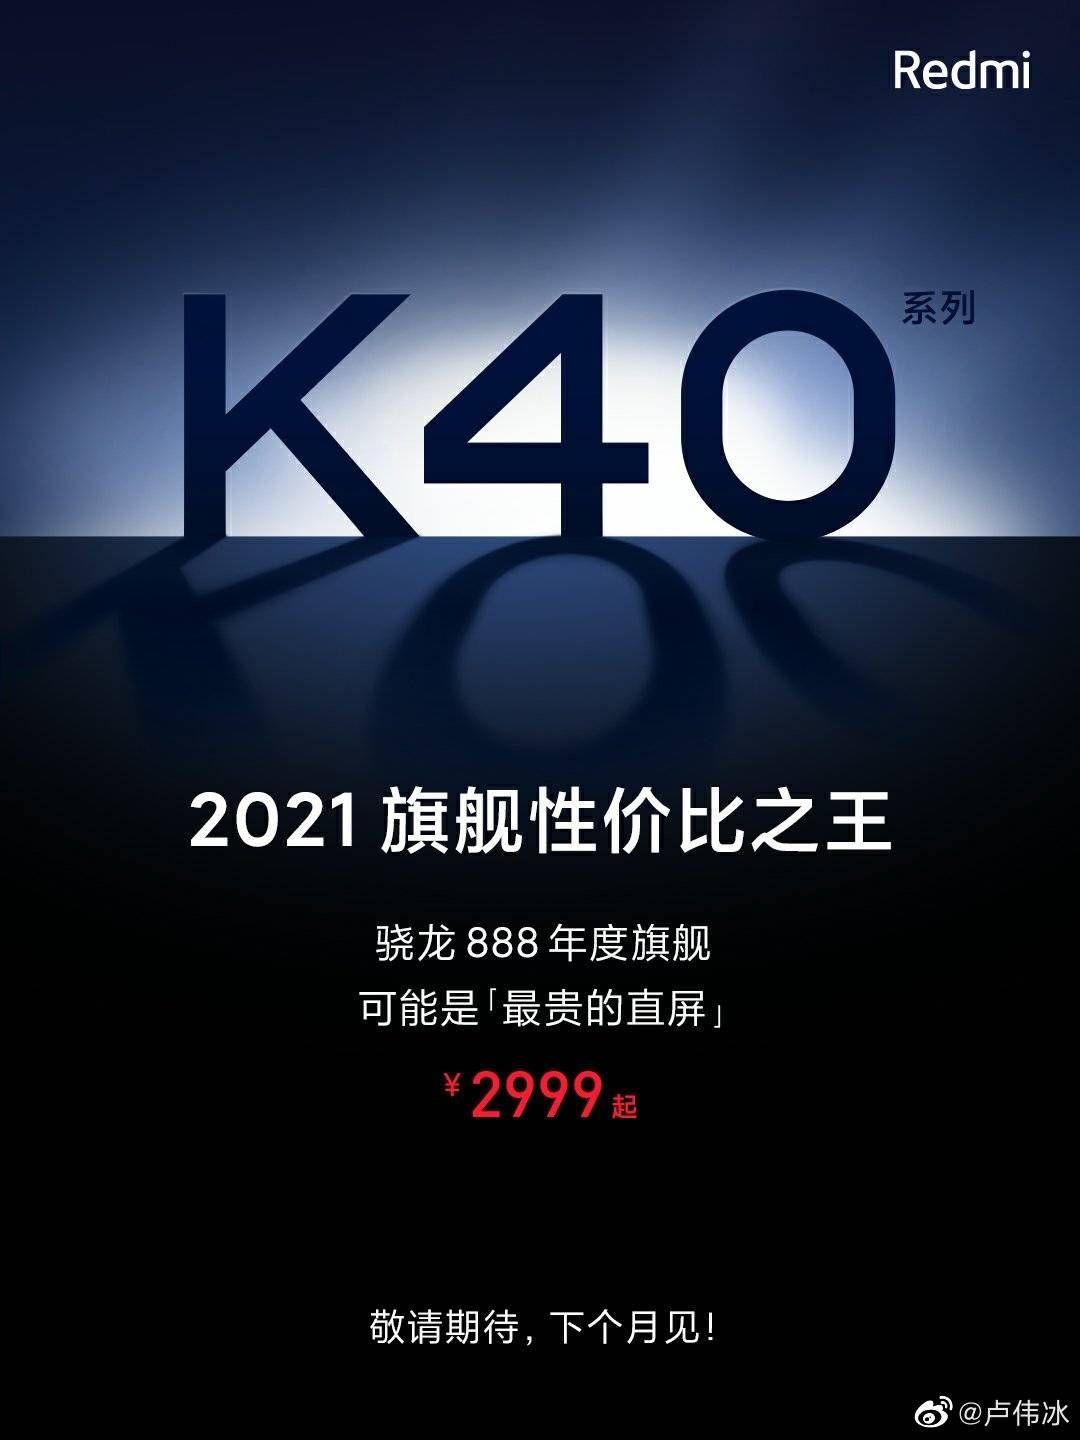 最强性价比之王,红米k40系列搭载骁龙888强势归来.